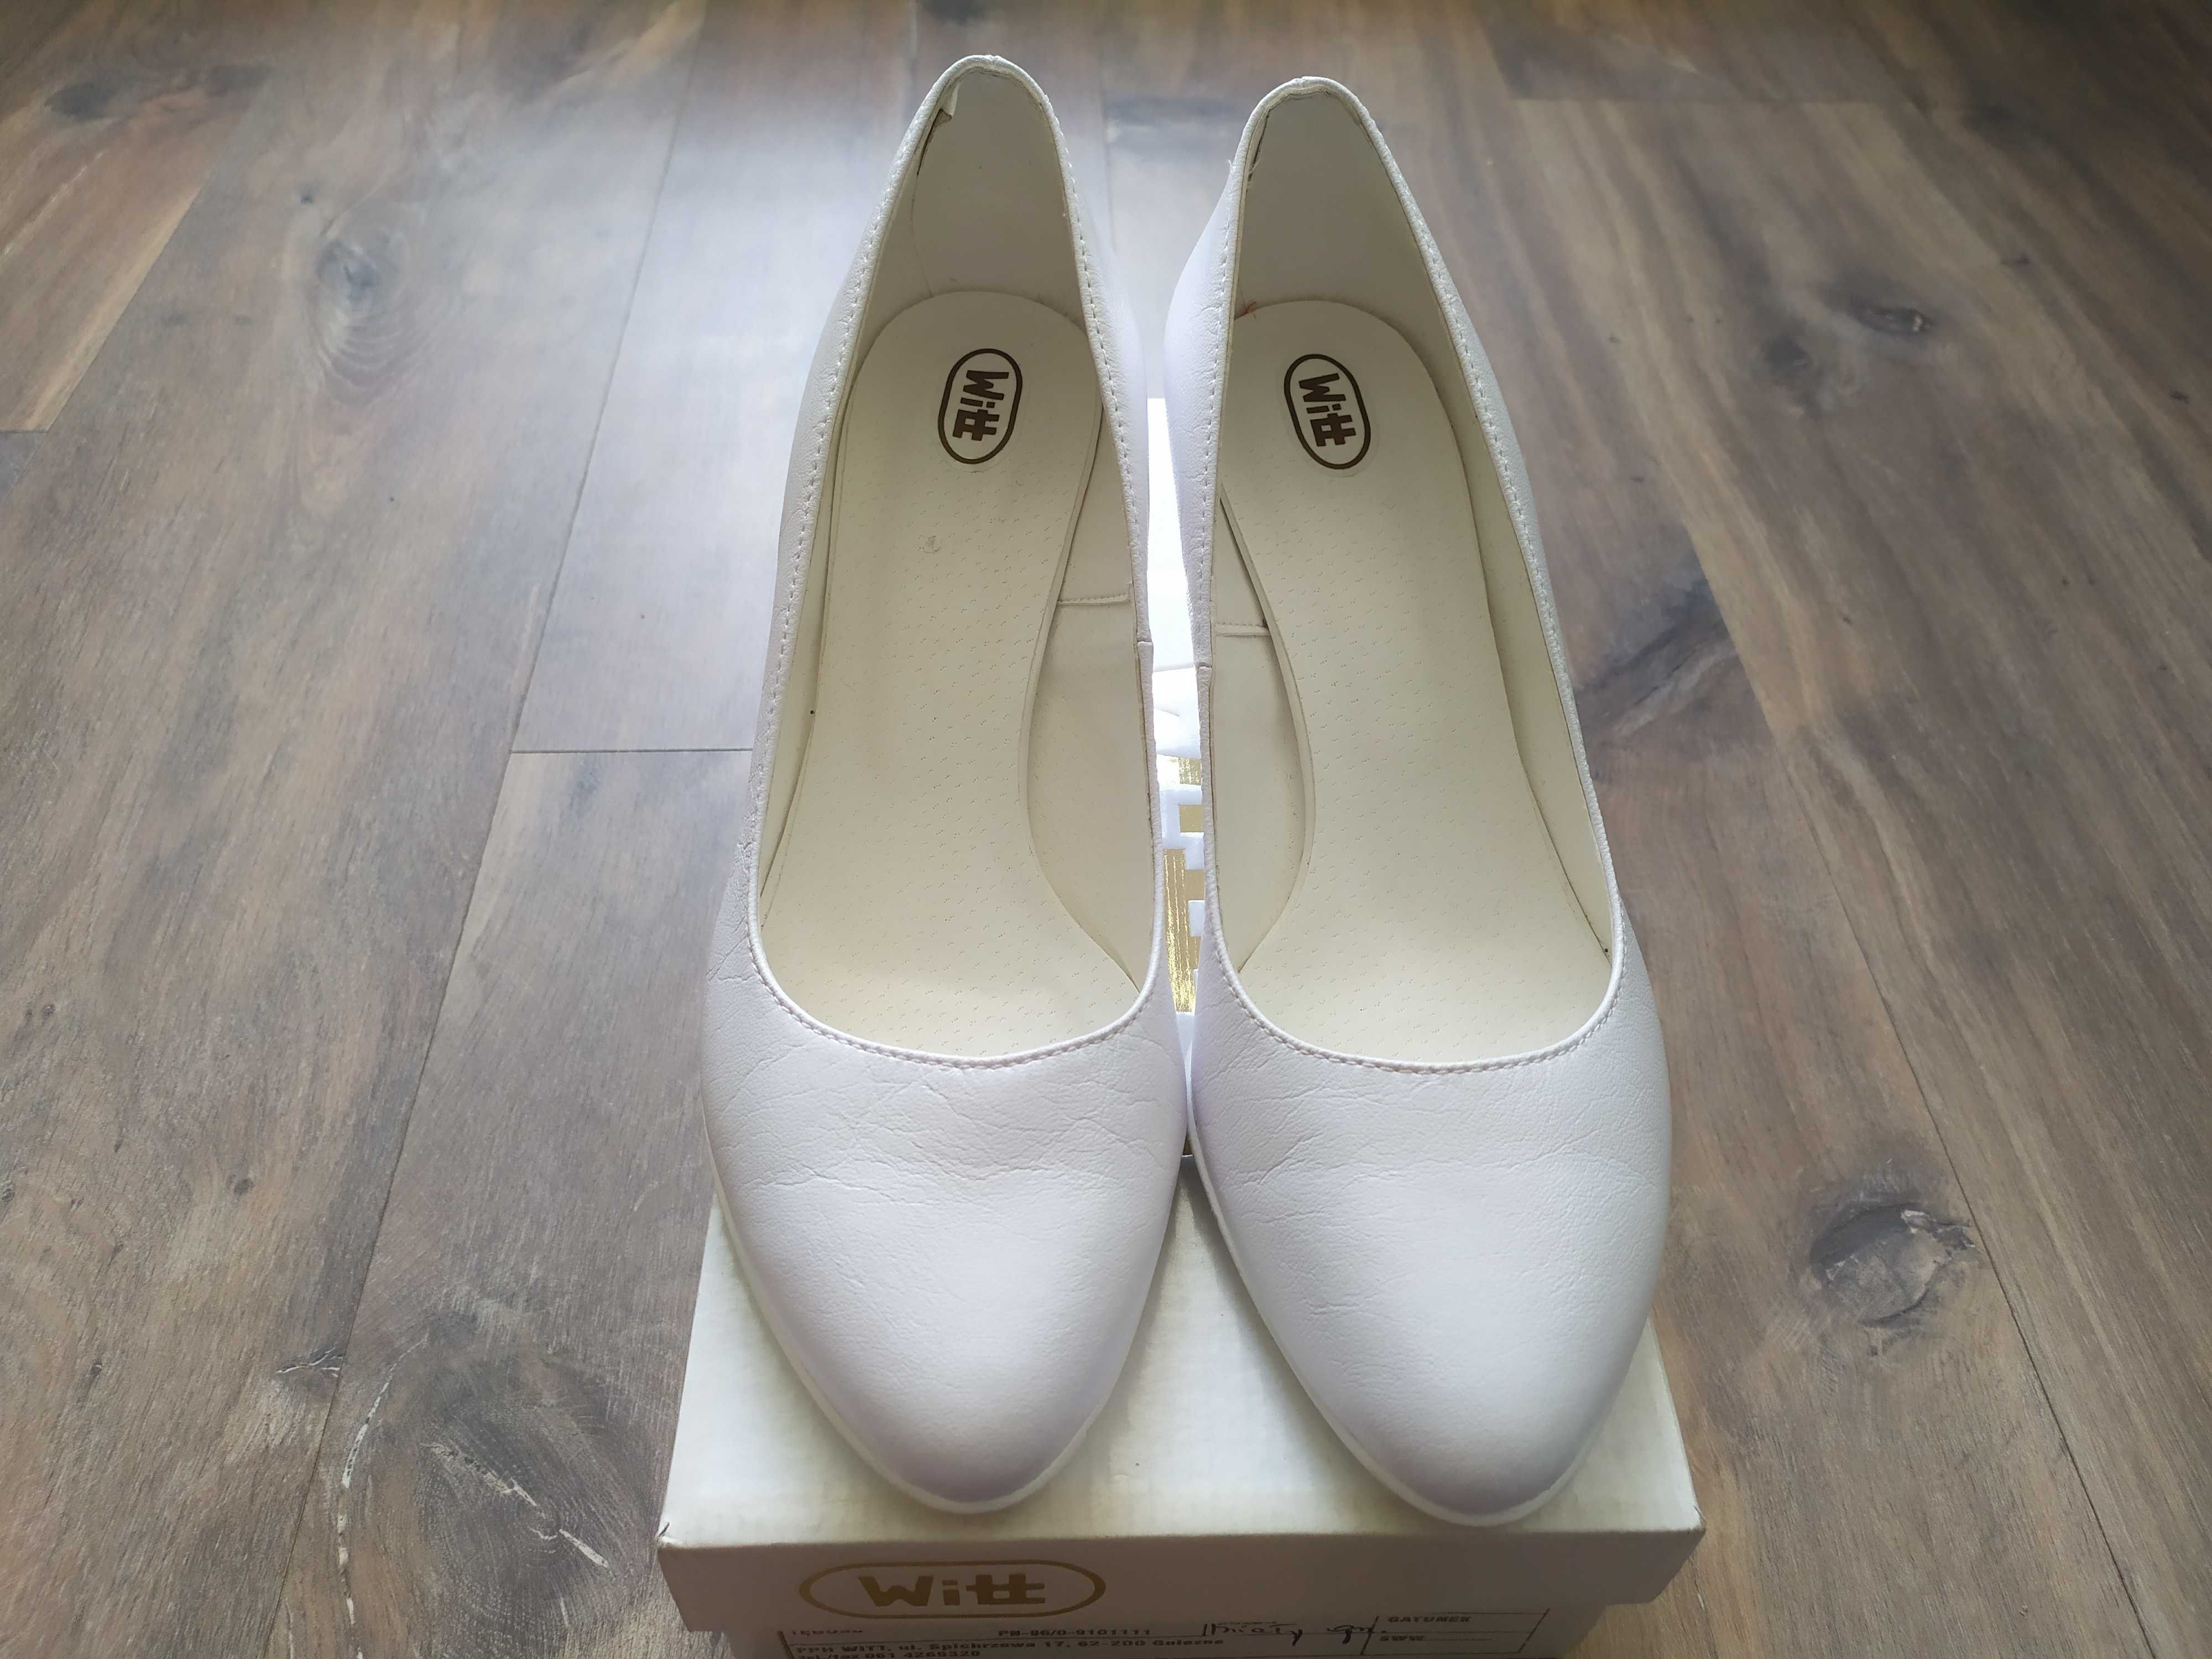 Nieużywane buty Witt białe - 39 Powystawowe model 105 czółenka